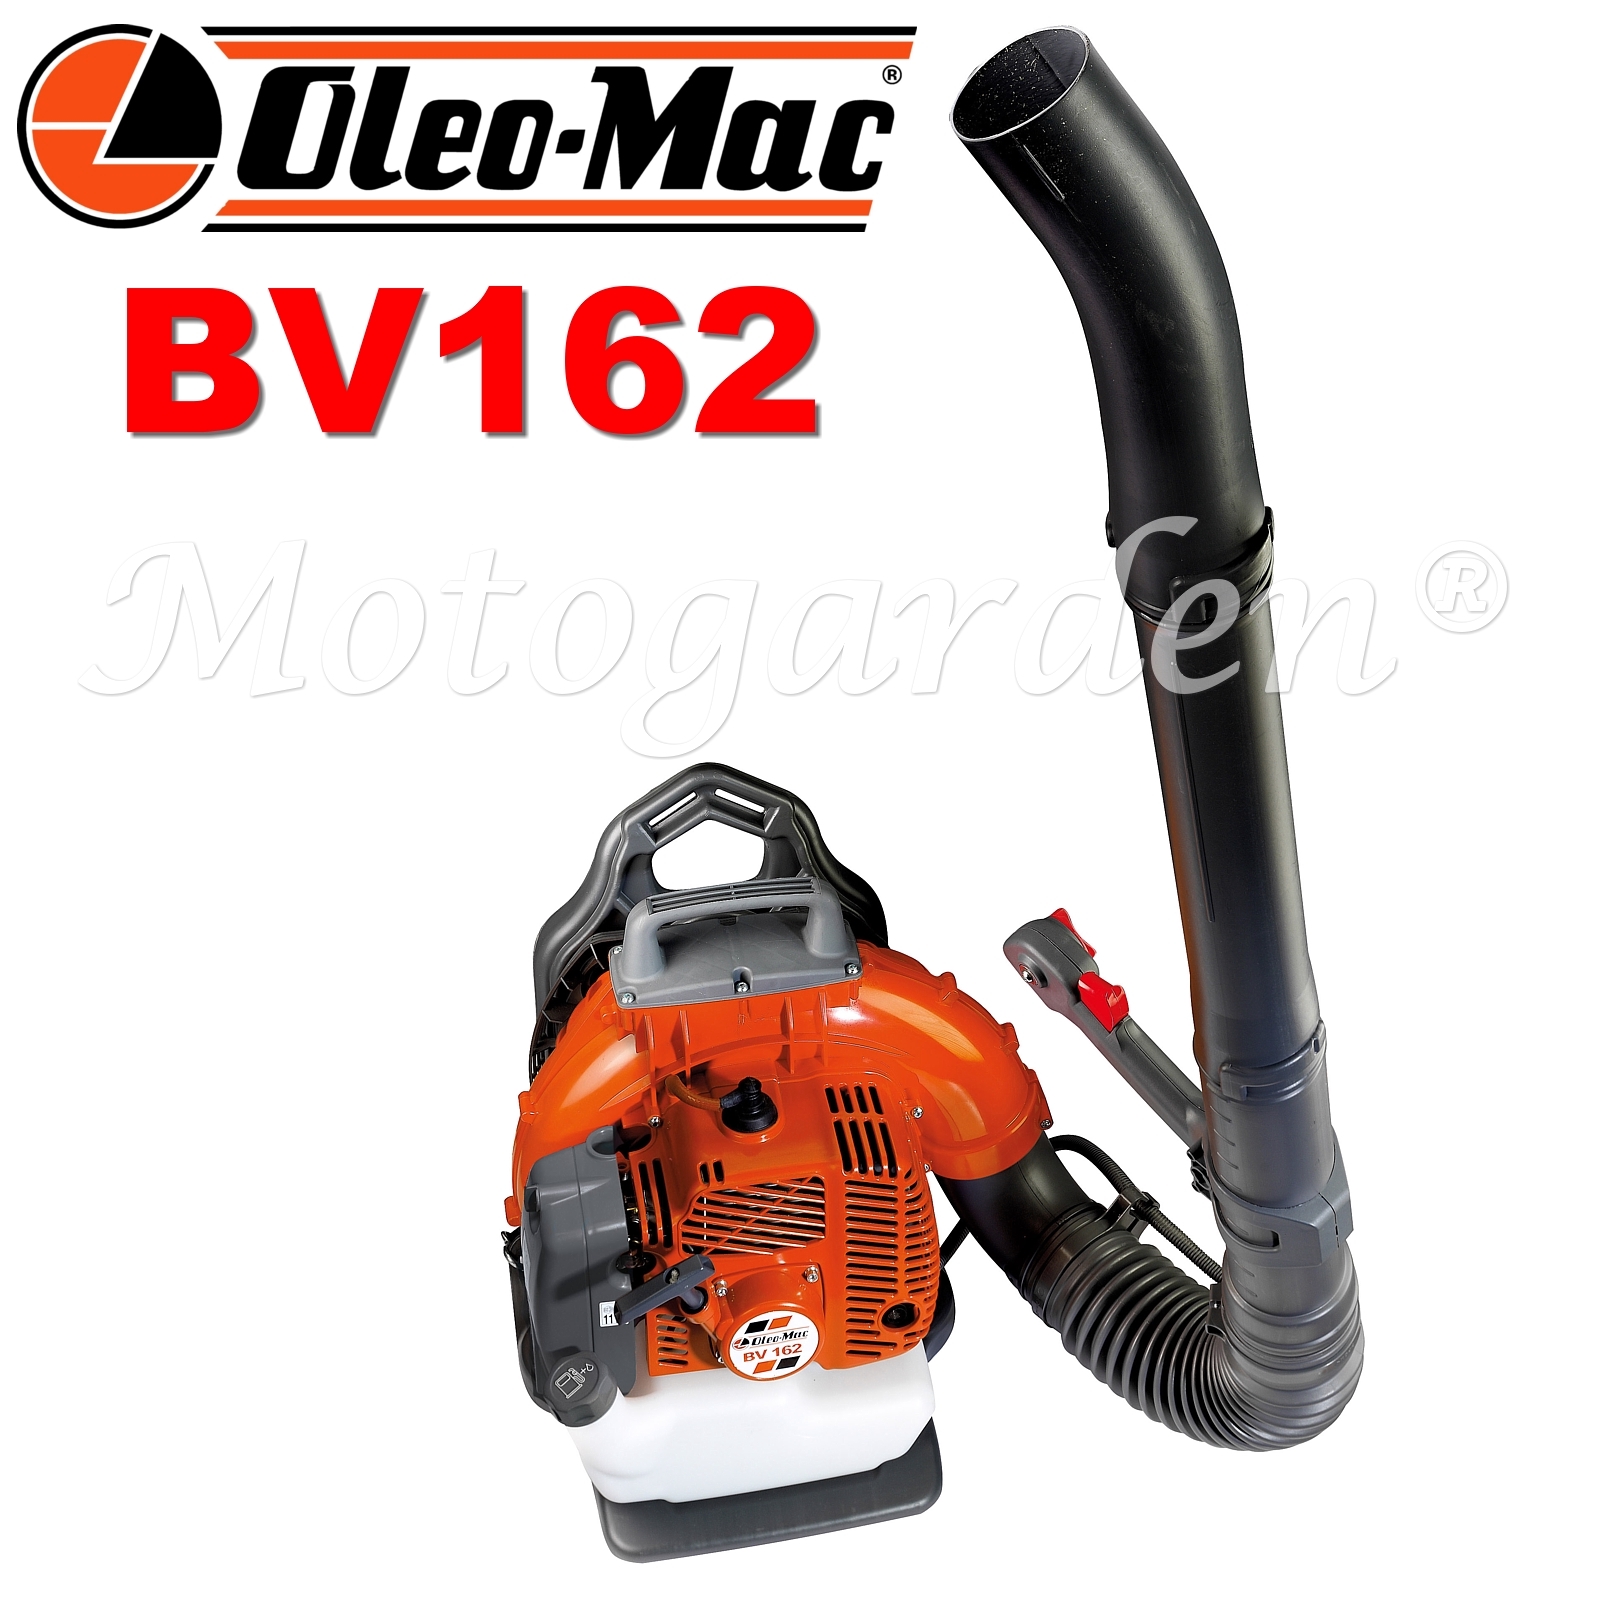 Nuovo modello di soffiatore OleoMac BV270BP leggero e potente, facile da usare.